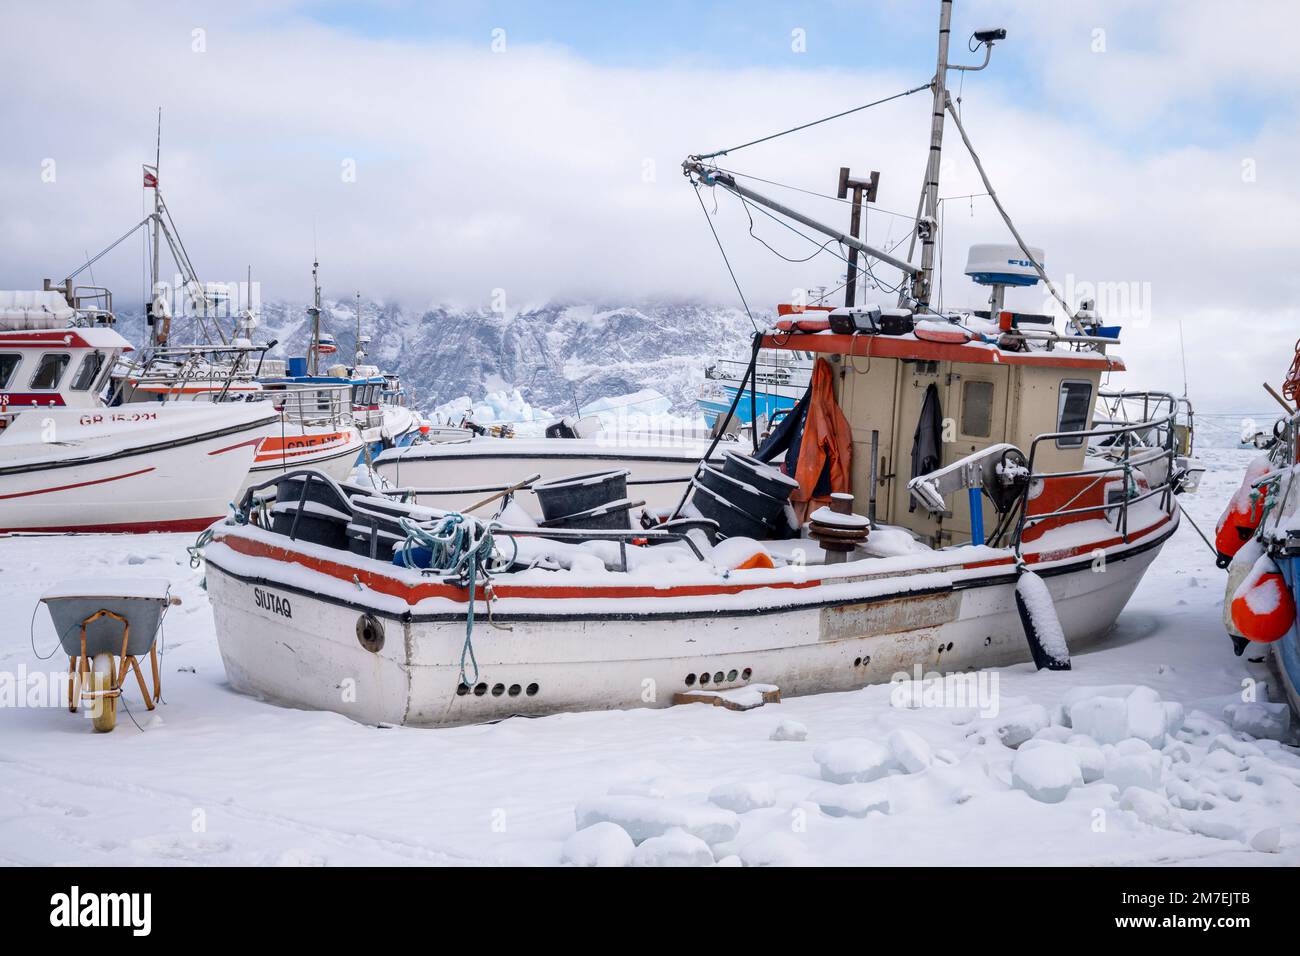 Bateaux de pêche gelés dans la glace de mer dans le port d'Uummannaq, dans l'ouest du Groenland Banque D'Images